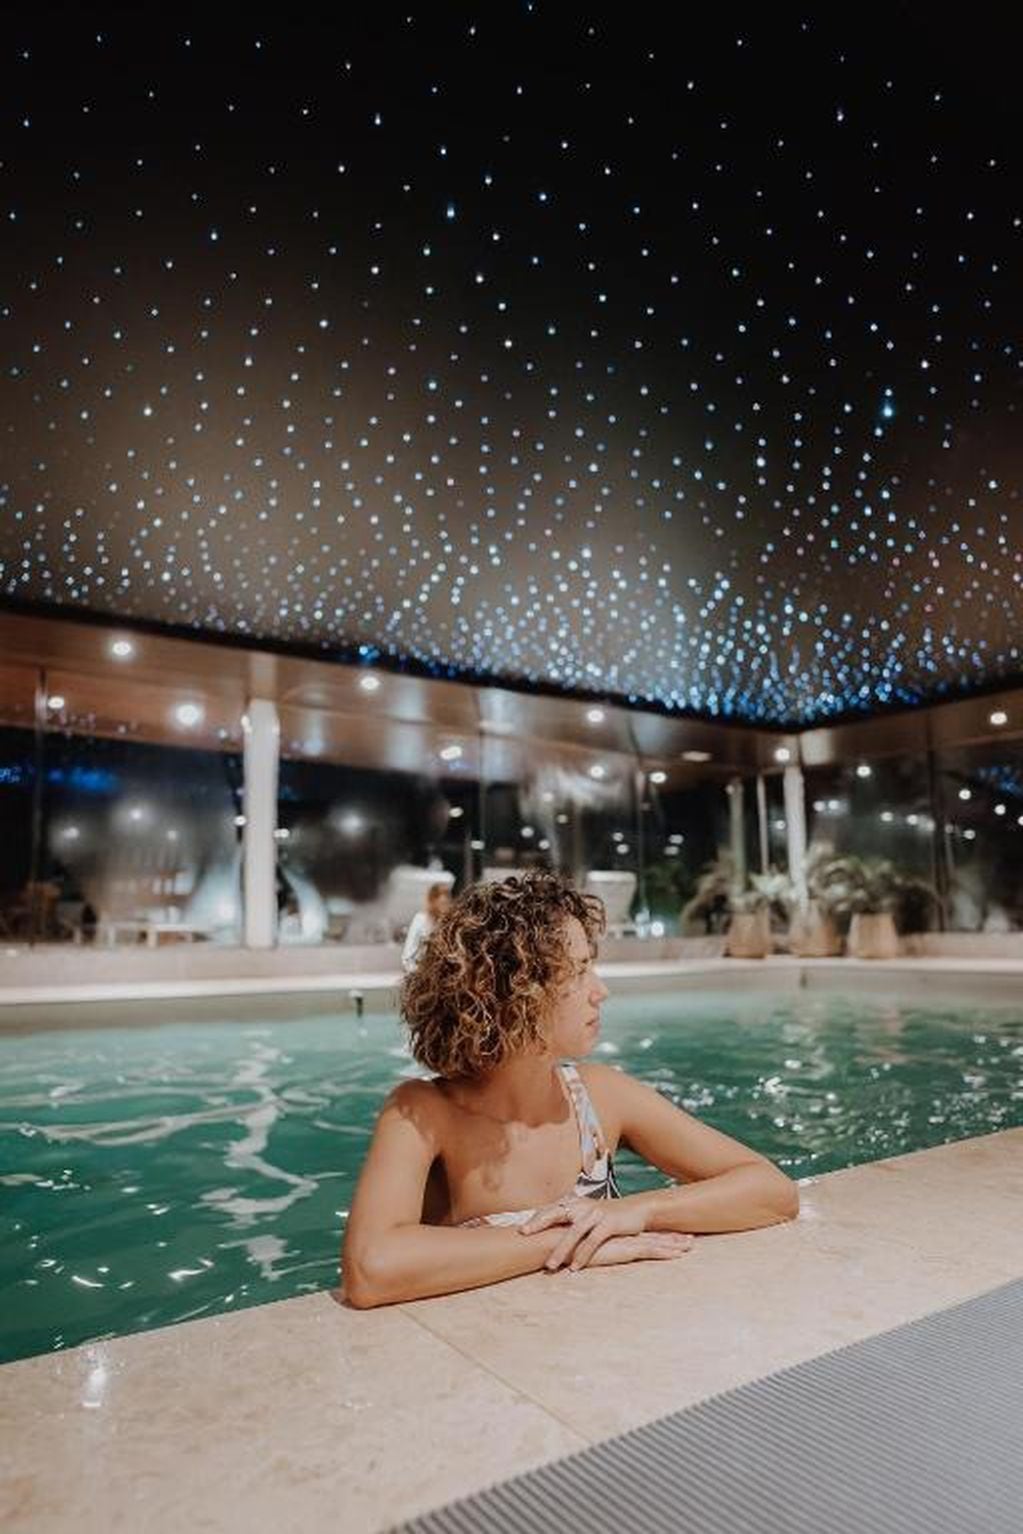 El alojamiento cuenta con una piscina iluminada que simula un cielo estrellado.